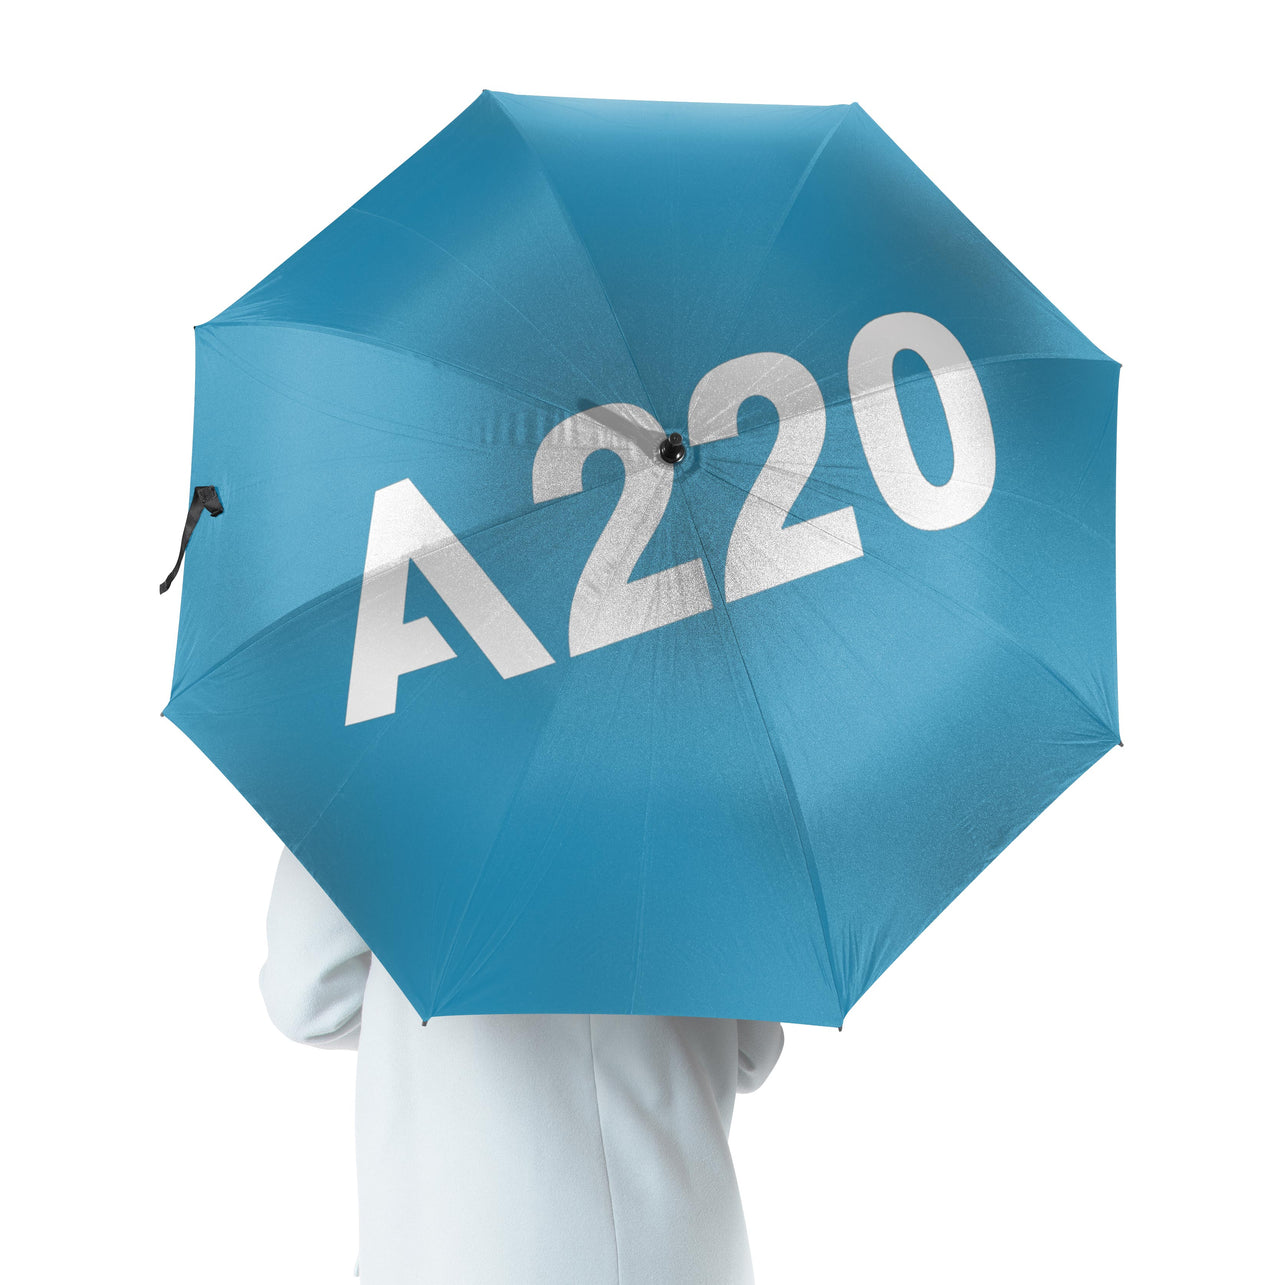 A220 Flat Text Designed Umbrella